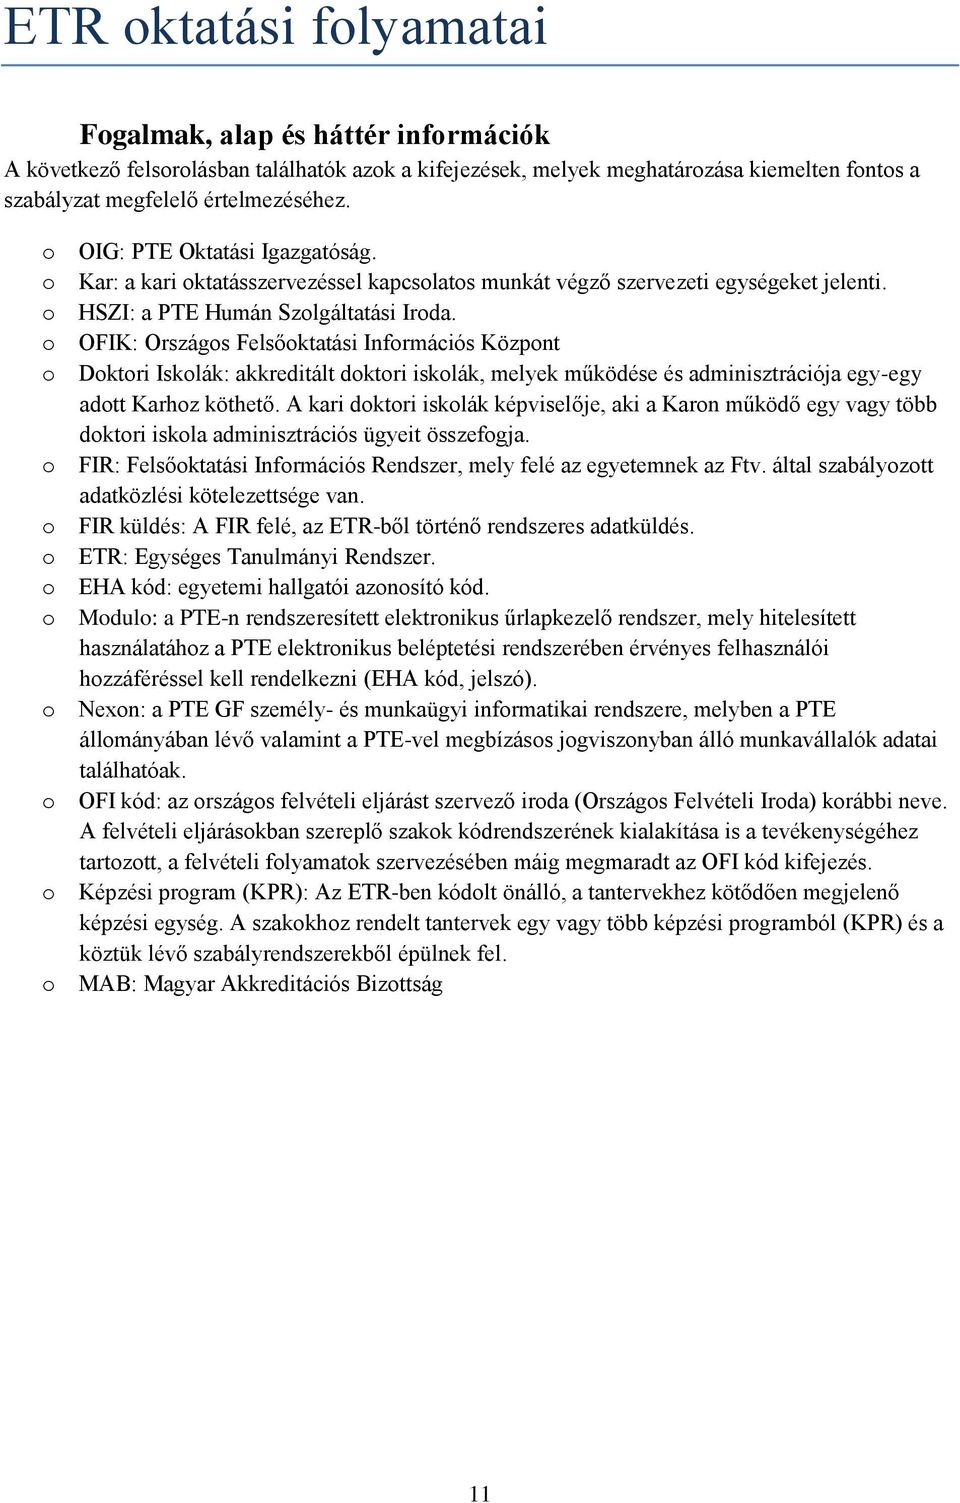 A Pécsi Tudományegyetem szabályzata az ETR oktatási és pénzügyi  folyamatairól - PDF Ingyenes letöltés